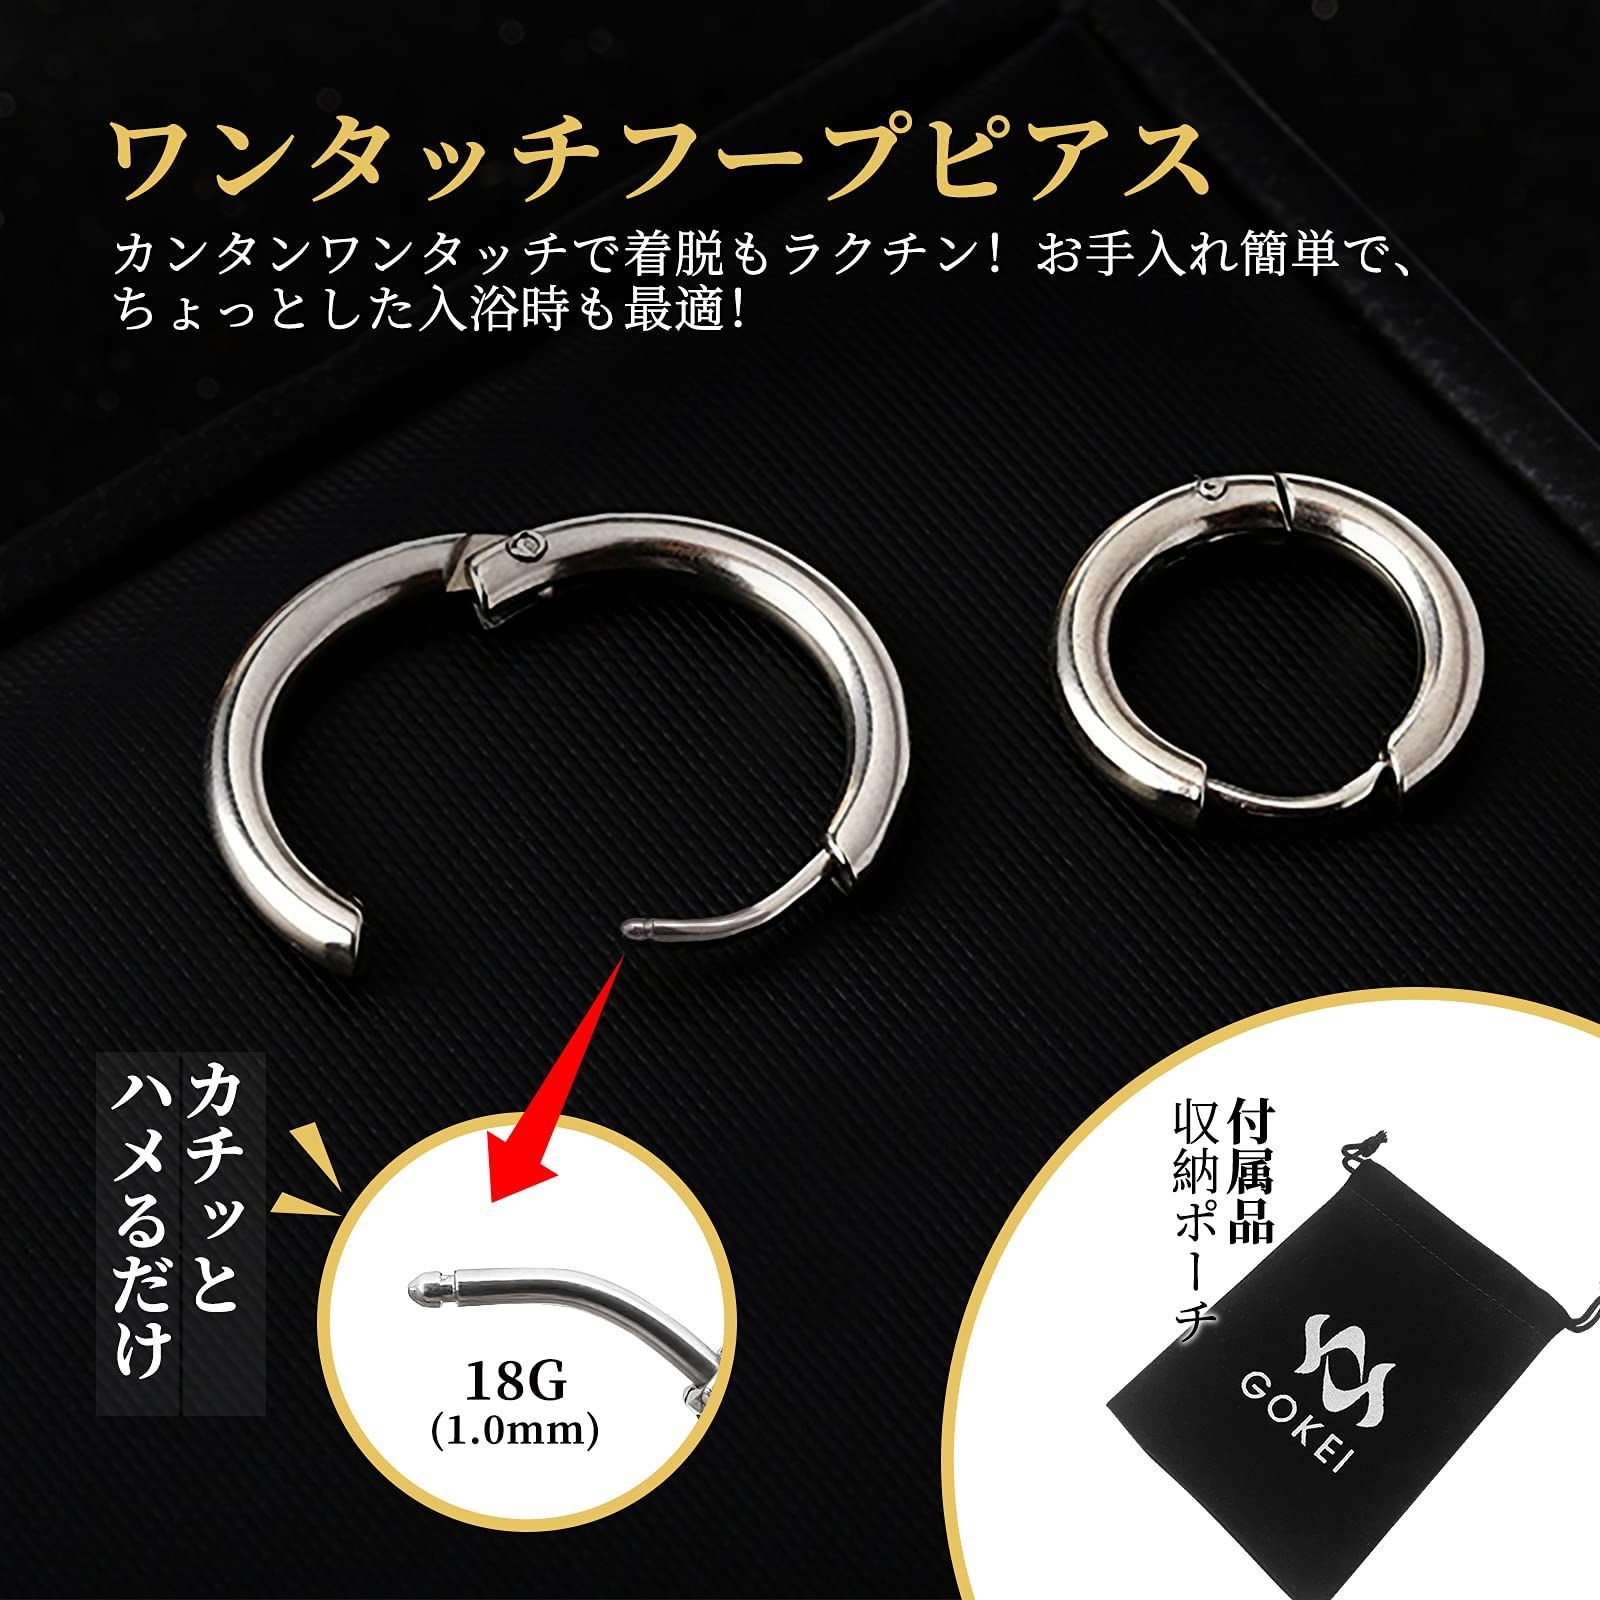 ◇ フープイヤリング ステンレス メンズ レディース シルバー 10mm ピアス(両耳用) 